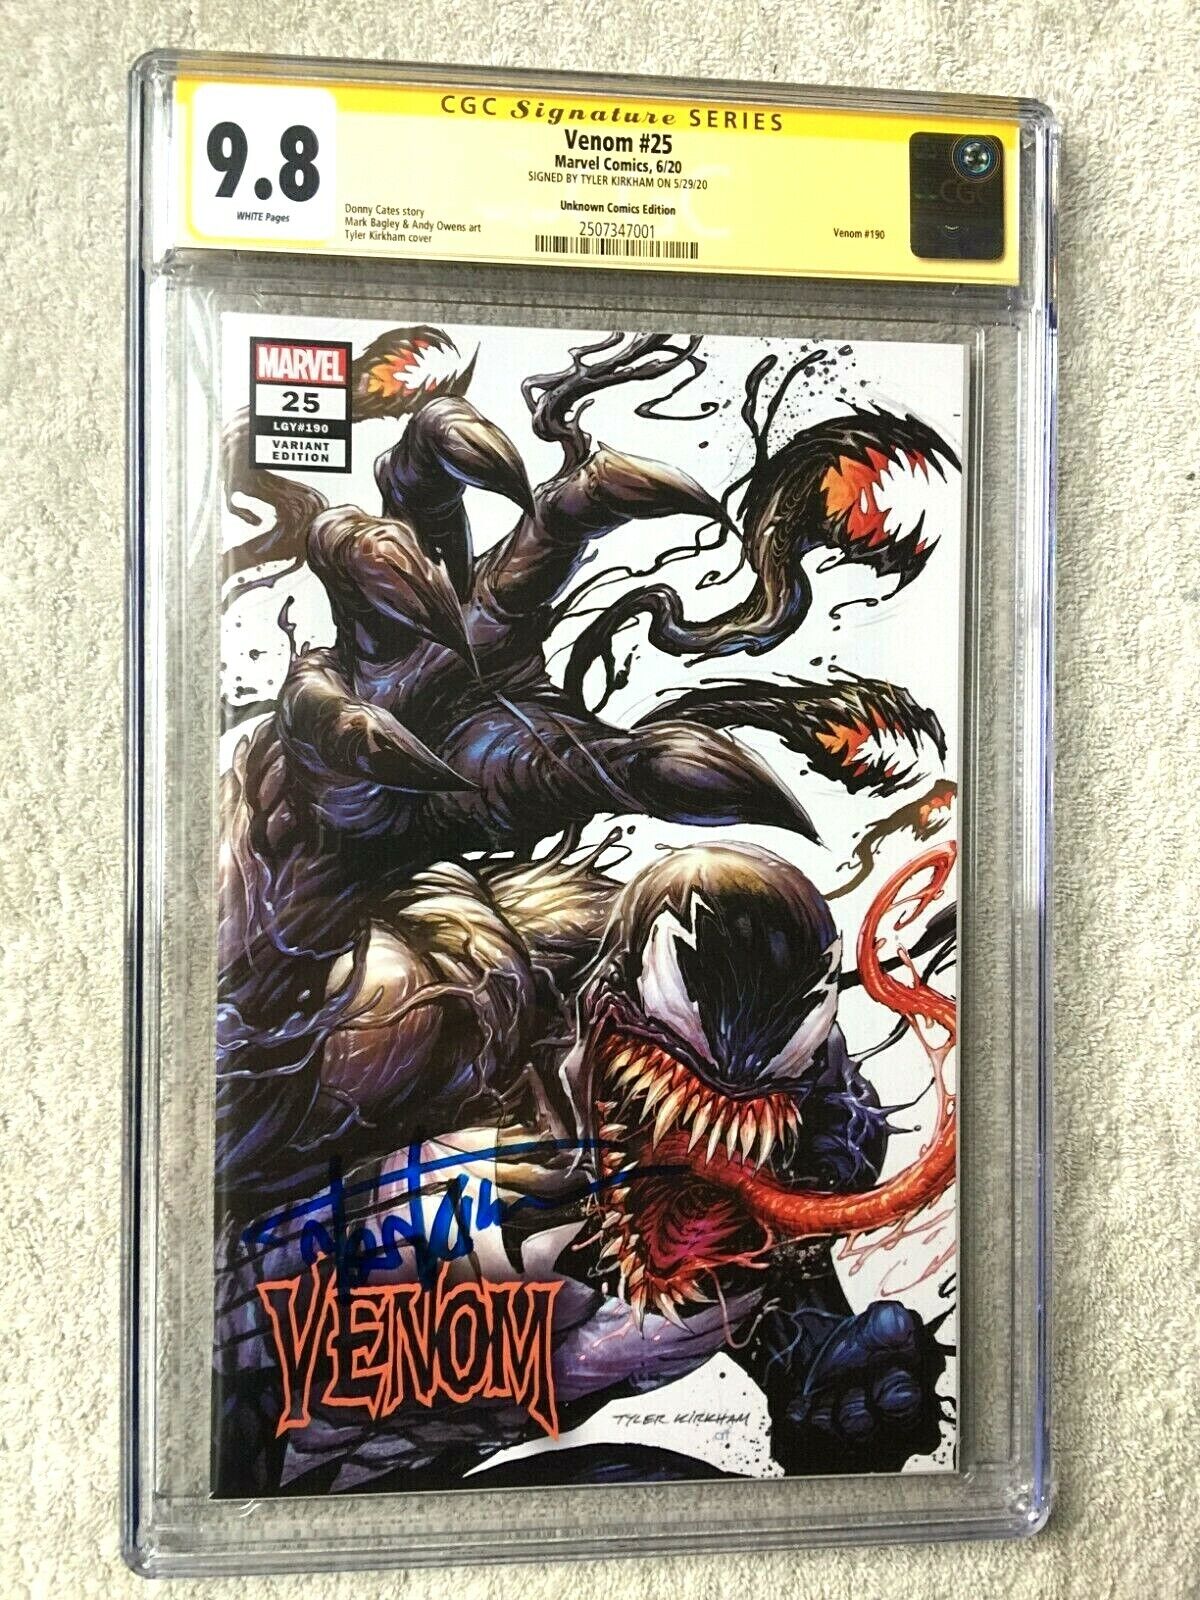 Venom #25 June 2020 CGC 9.8 white pgs gold label signature PLUS Free Reader Copy